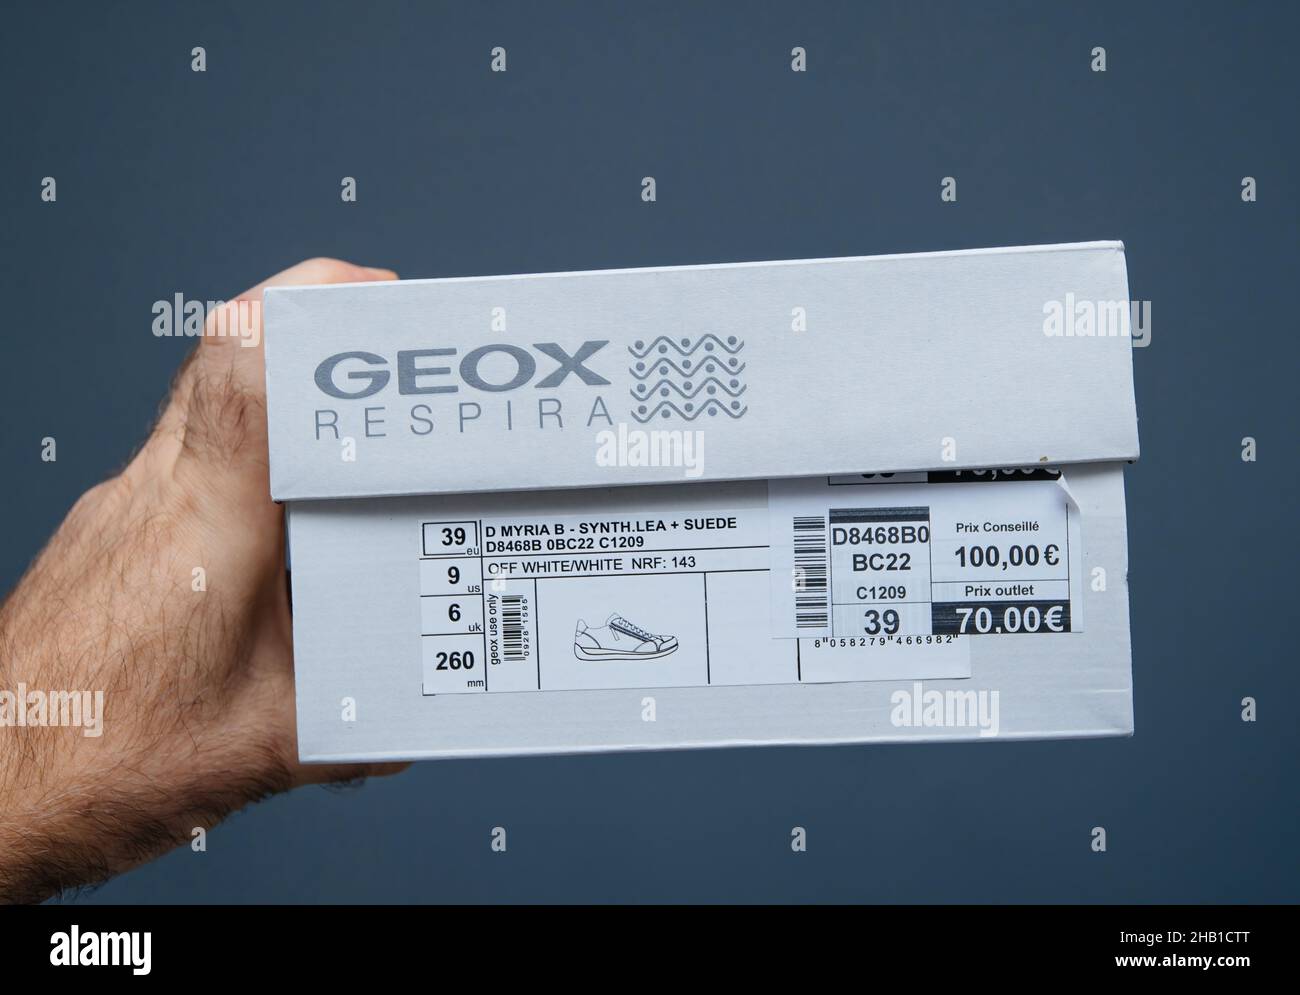 POV macho de mano con nuevos zapatos Geox Respira solated sobre fondo gris con el precio de 100 euros y descuento especial de salida de 70 euros Fotografía de -